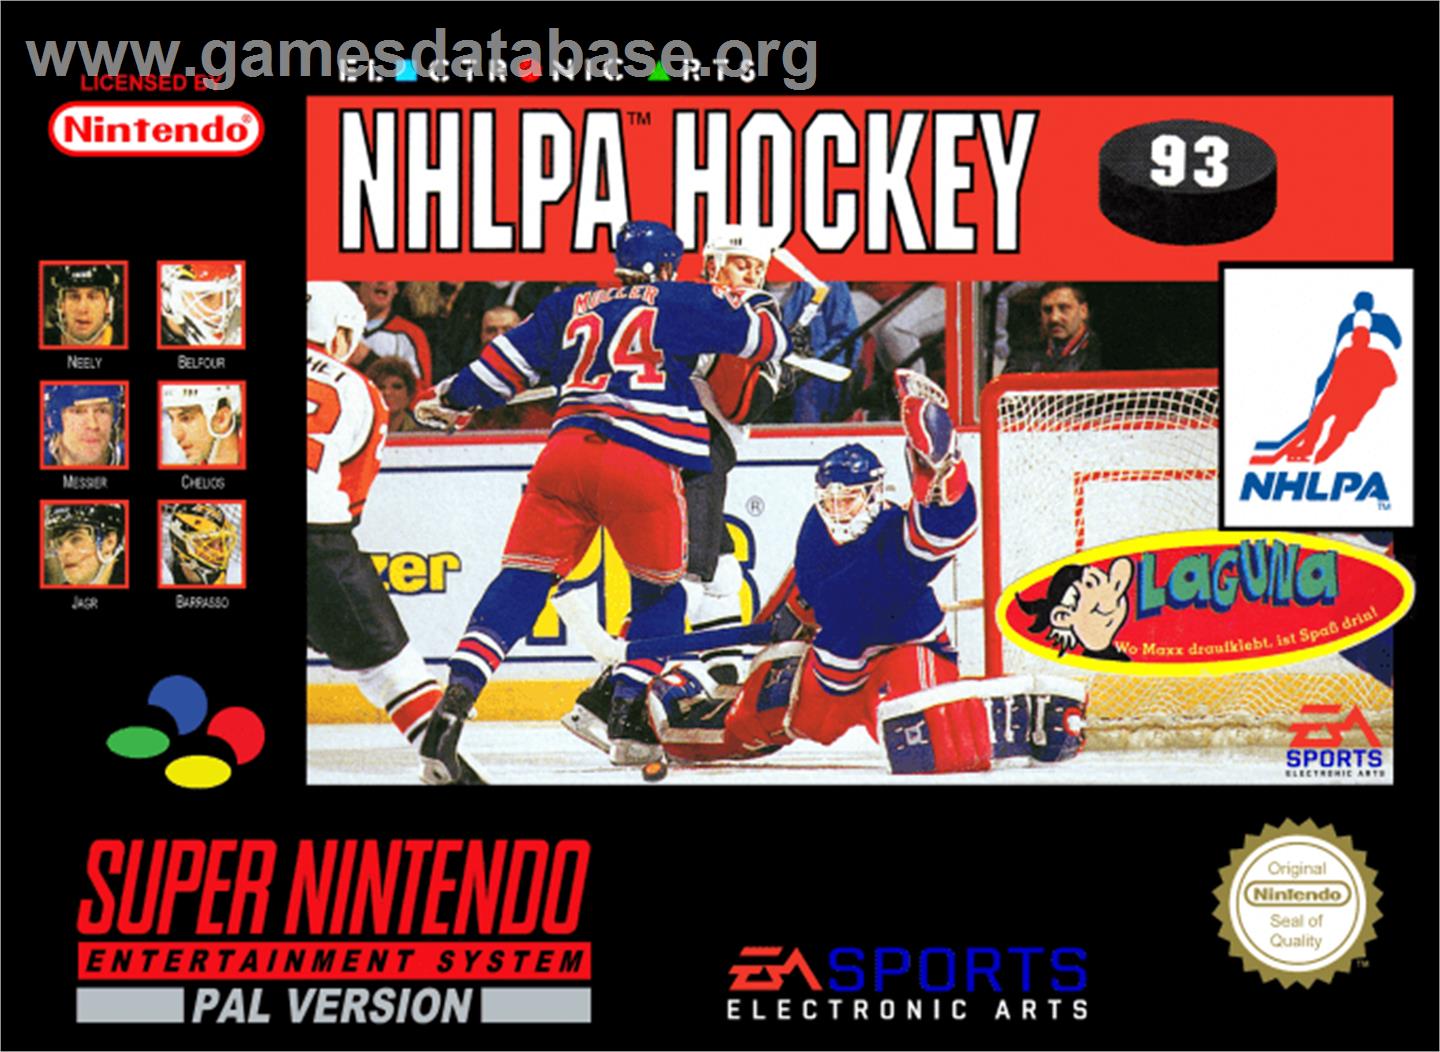 NHLPA Hockey '93 - Nintendo SNES - Artwork - Box